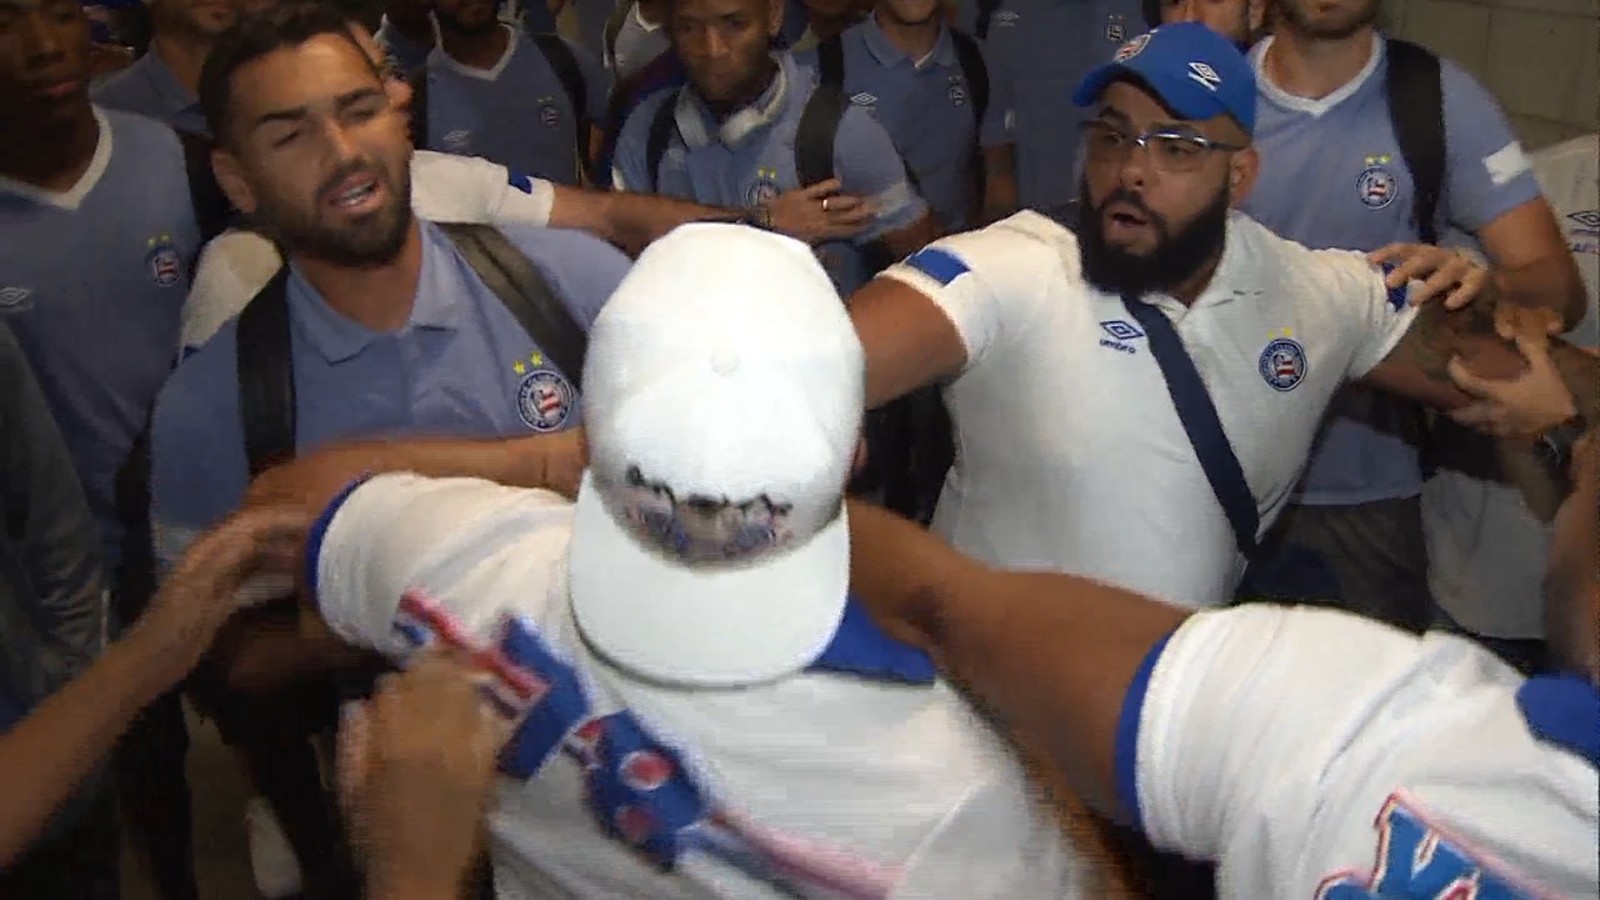 Vídeo: Jogadores e torcedores do Bahia entram em confronto no aeroporto